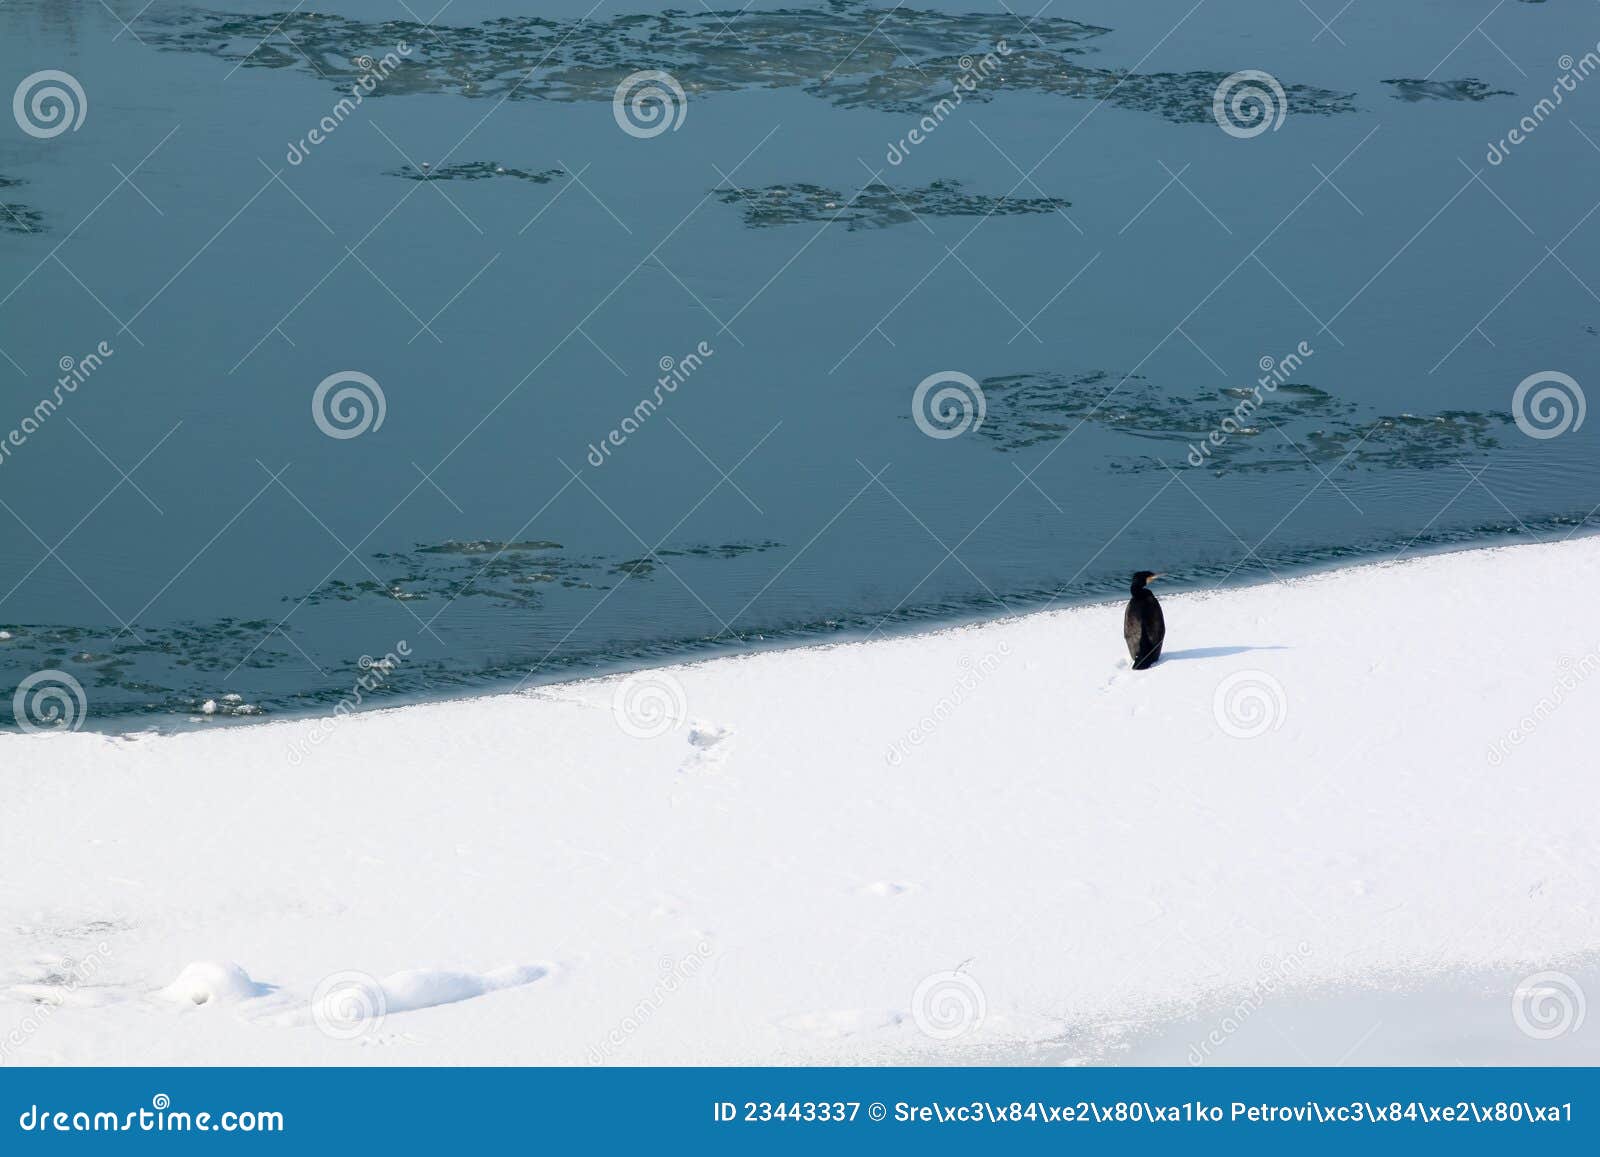 Stor is för cormorant. Cormorant fryst stor flod